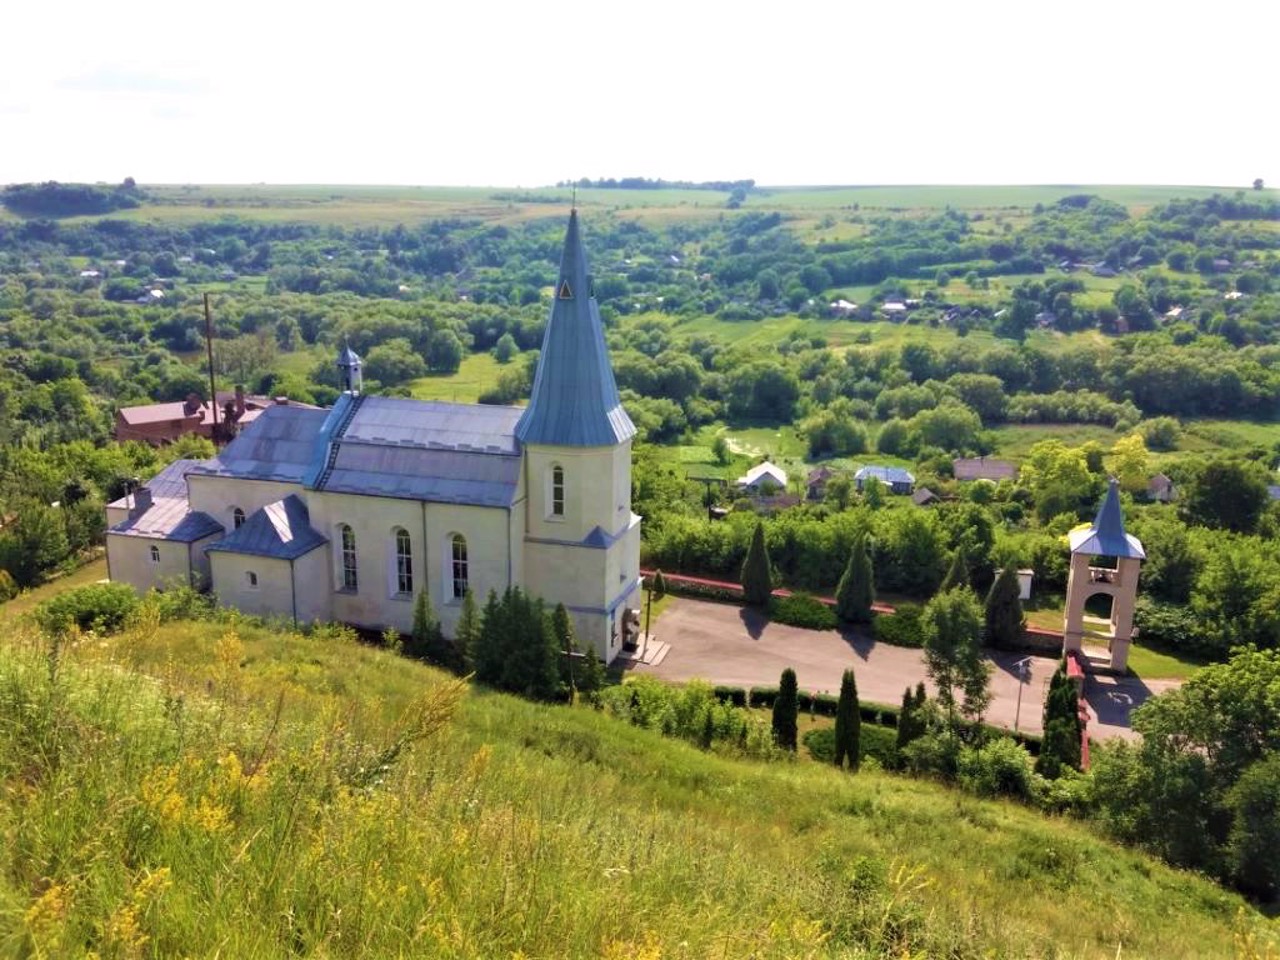 Zinkiv village